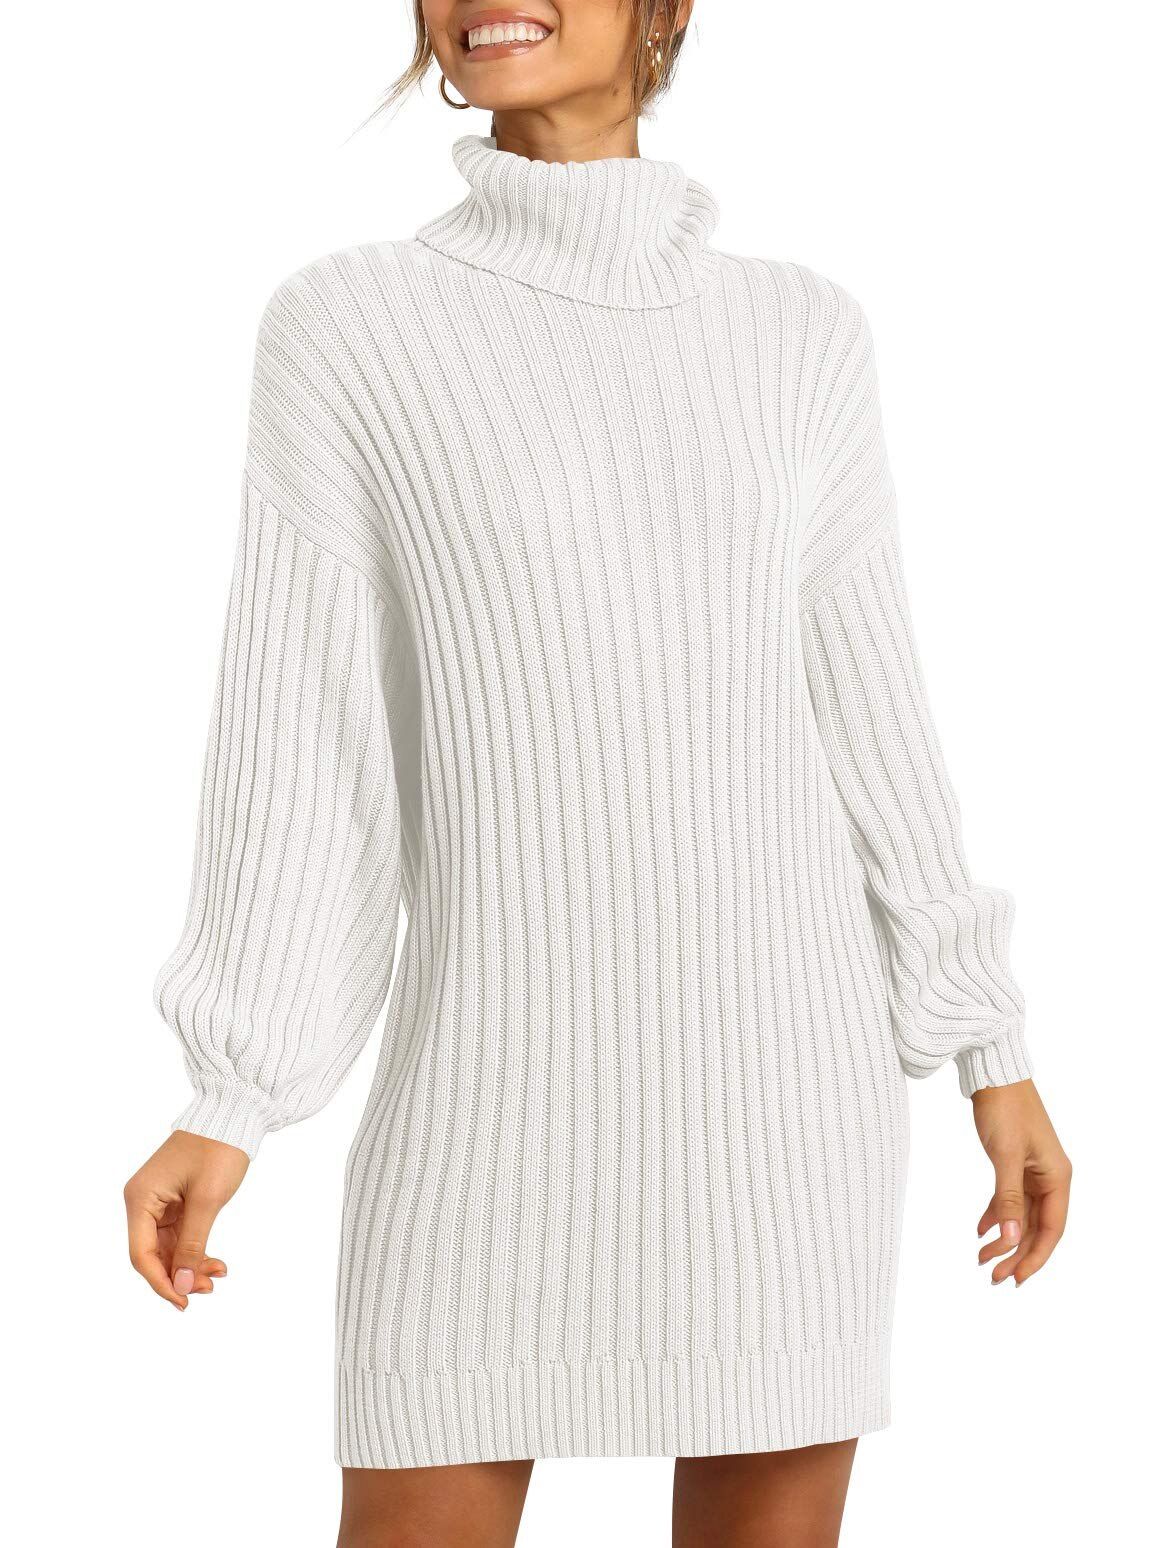 Fantaslook Sweaters for Women Turtleneck Long Lantern Sleeve Sweater Dress Knit Pullover Dresses ... | Walmart (US)